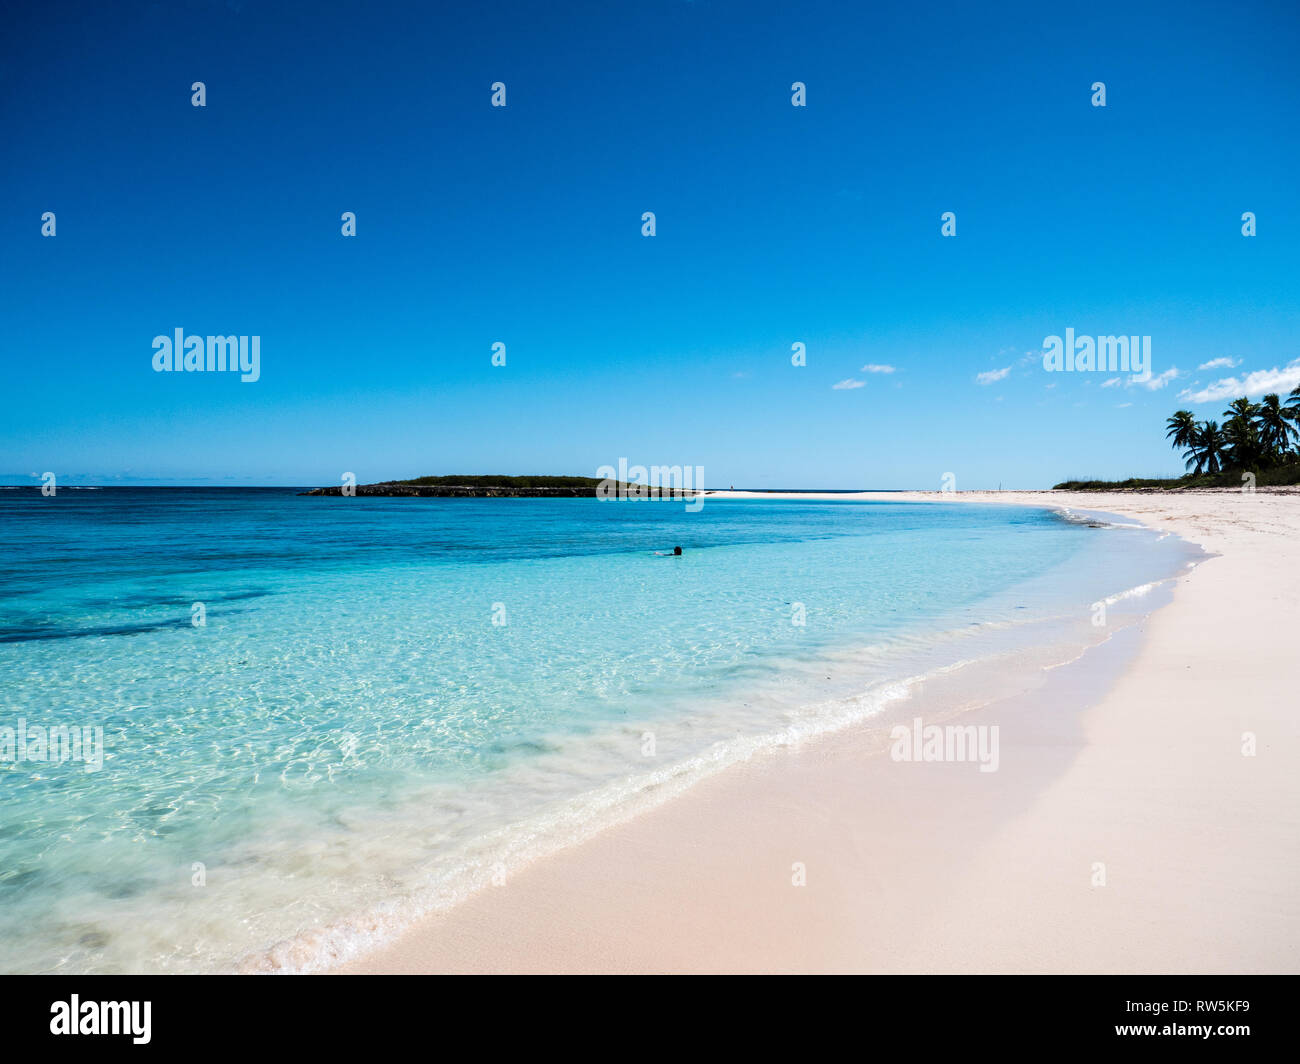 En la Isla de Coral Tropical Playa calas gemelas, Gobernadores Harbour Eleuthera Island, Las Bahamas, El Caribe. Foto de stock